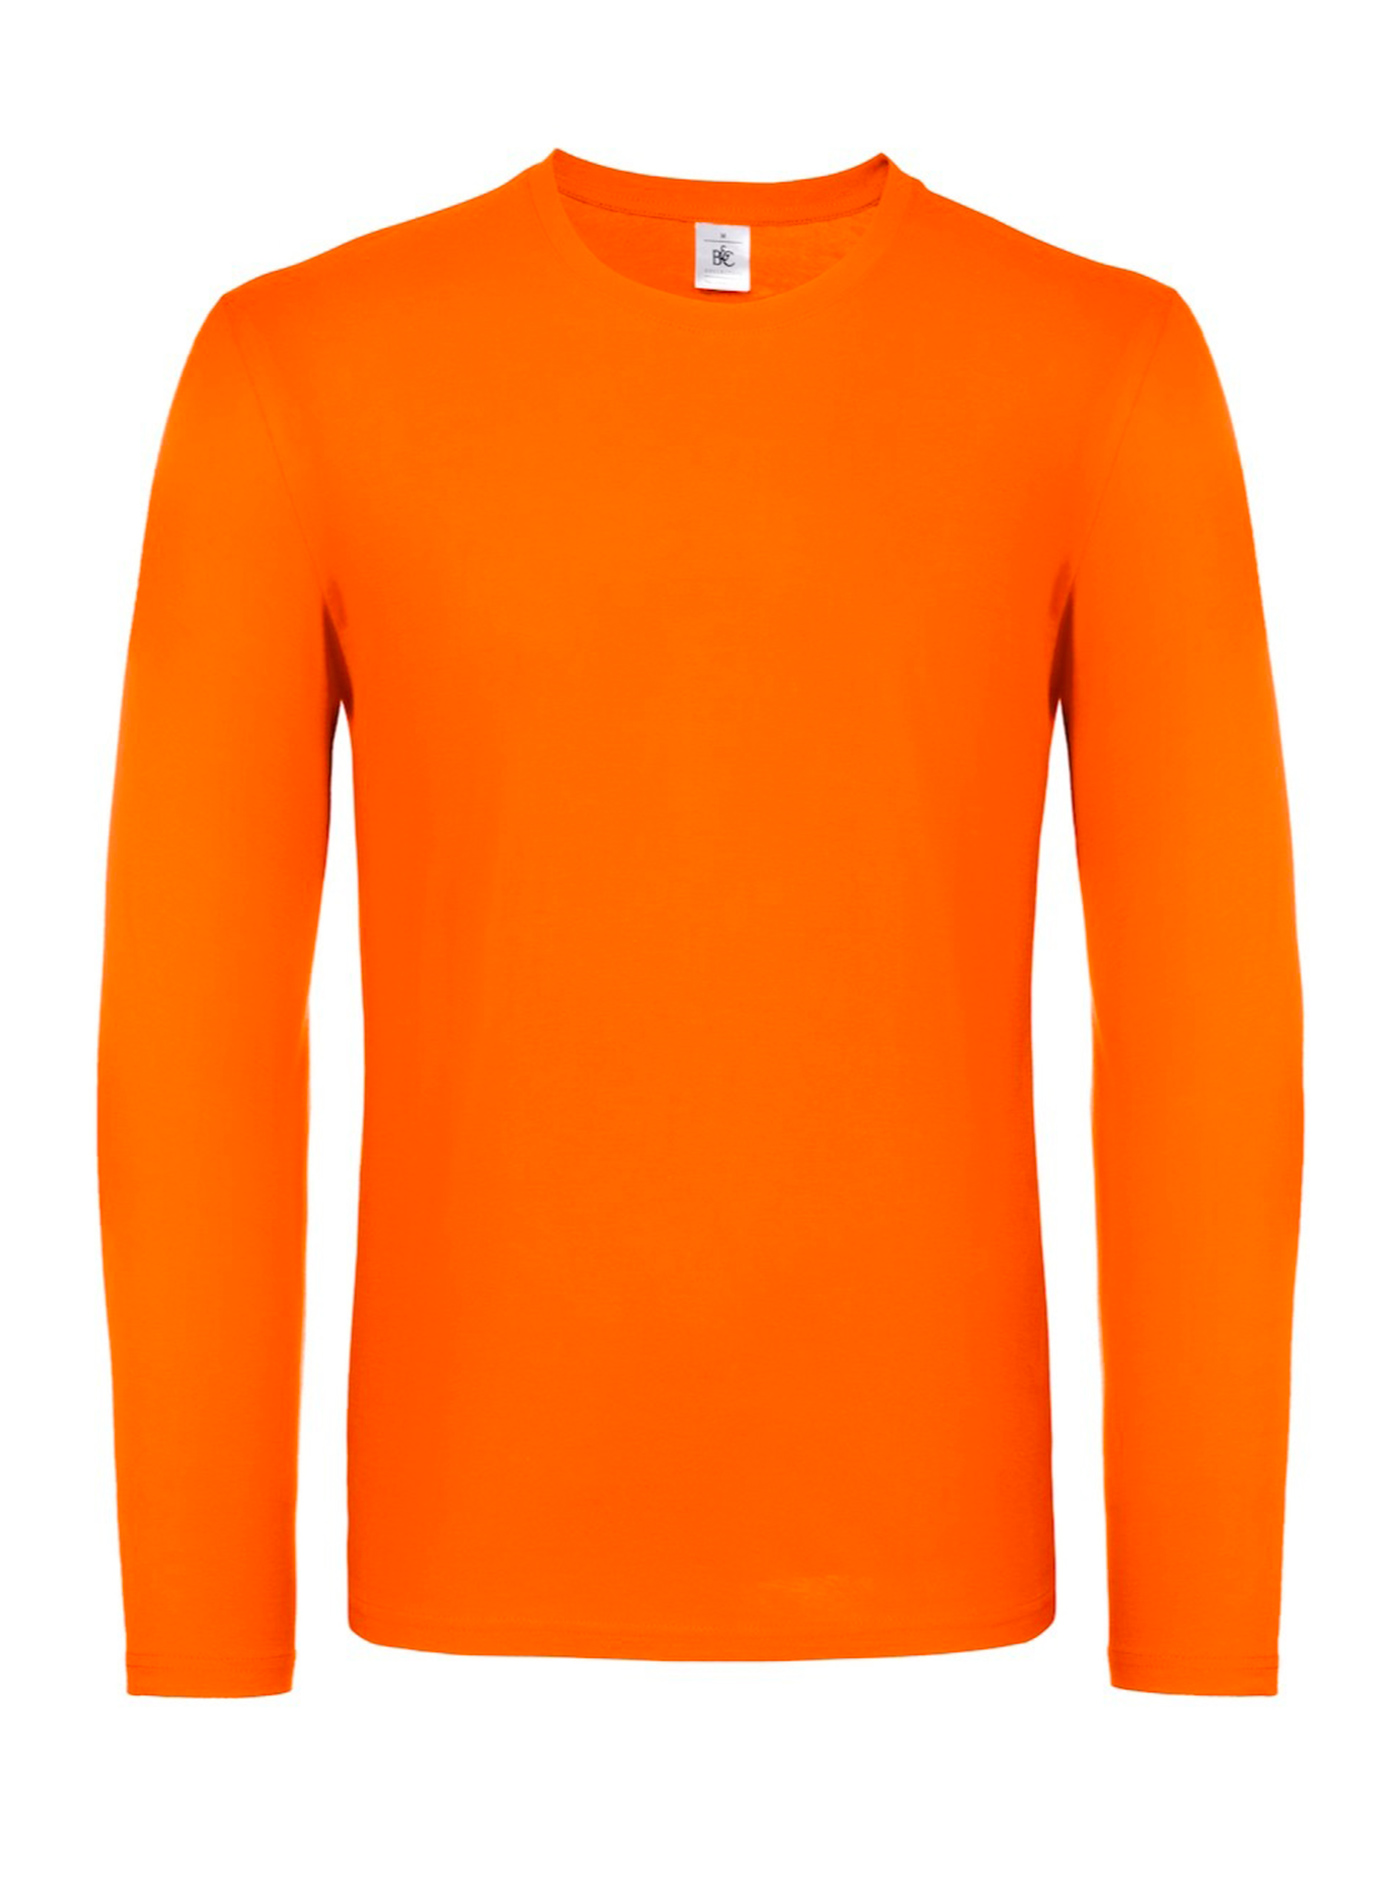 Tričko s dlouhým rukávem B&C Collection - Oranžová L